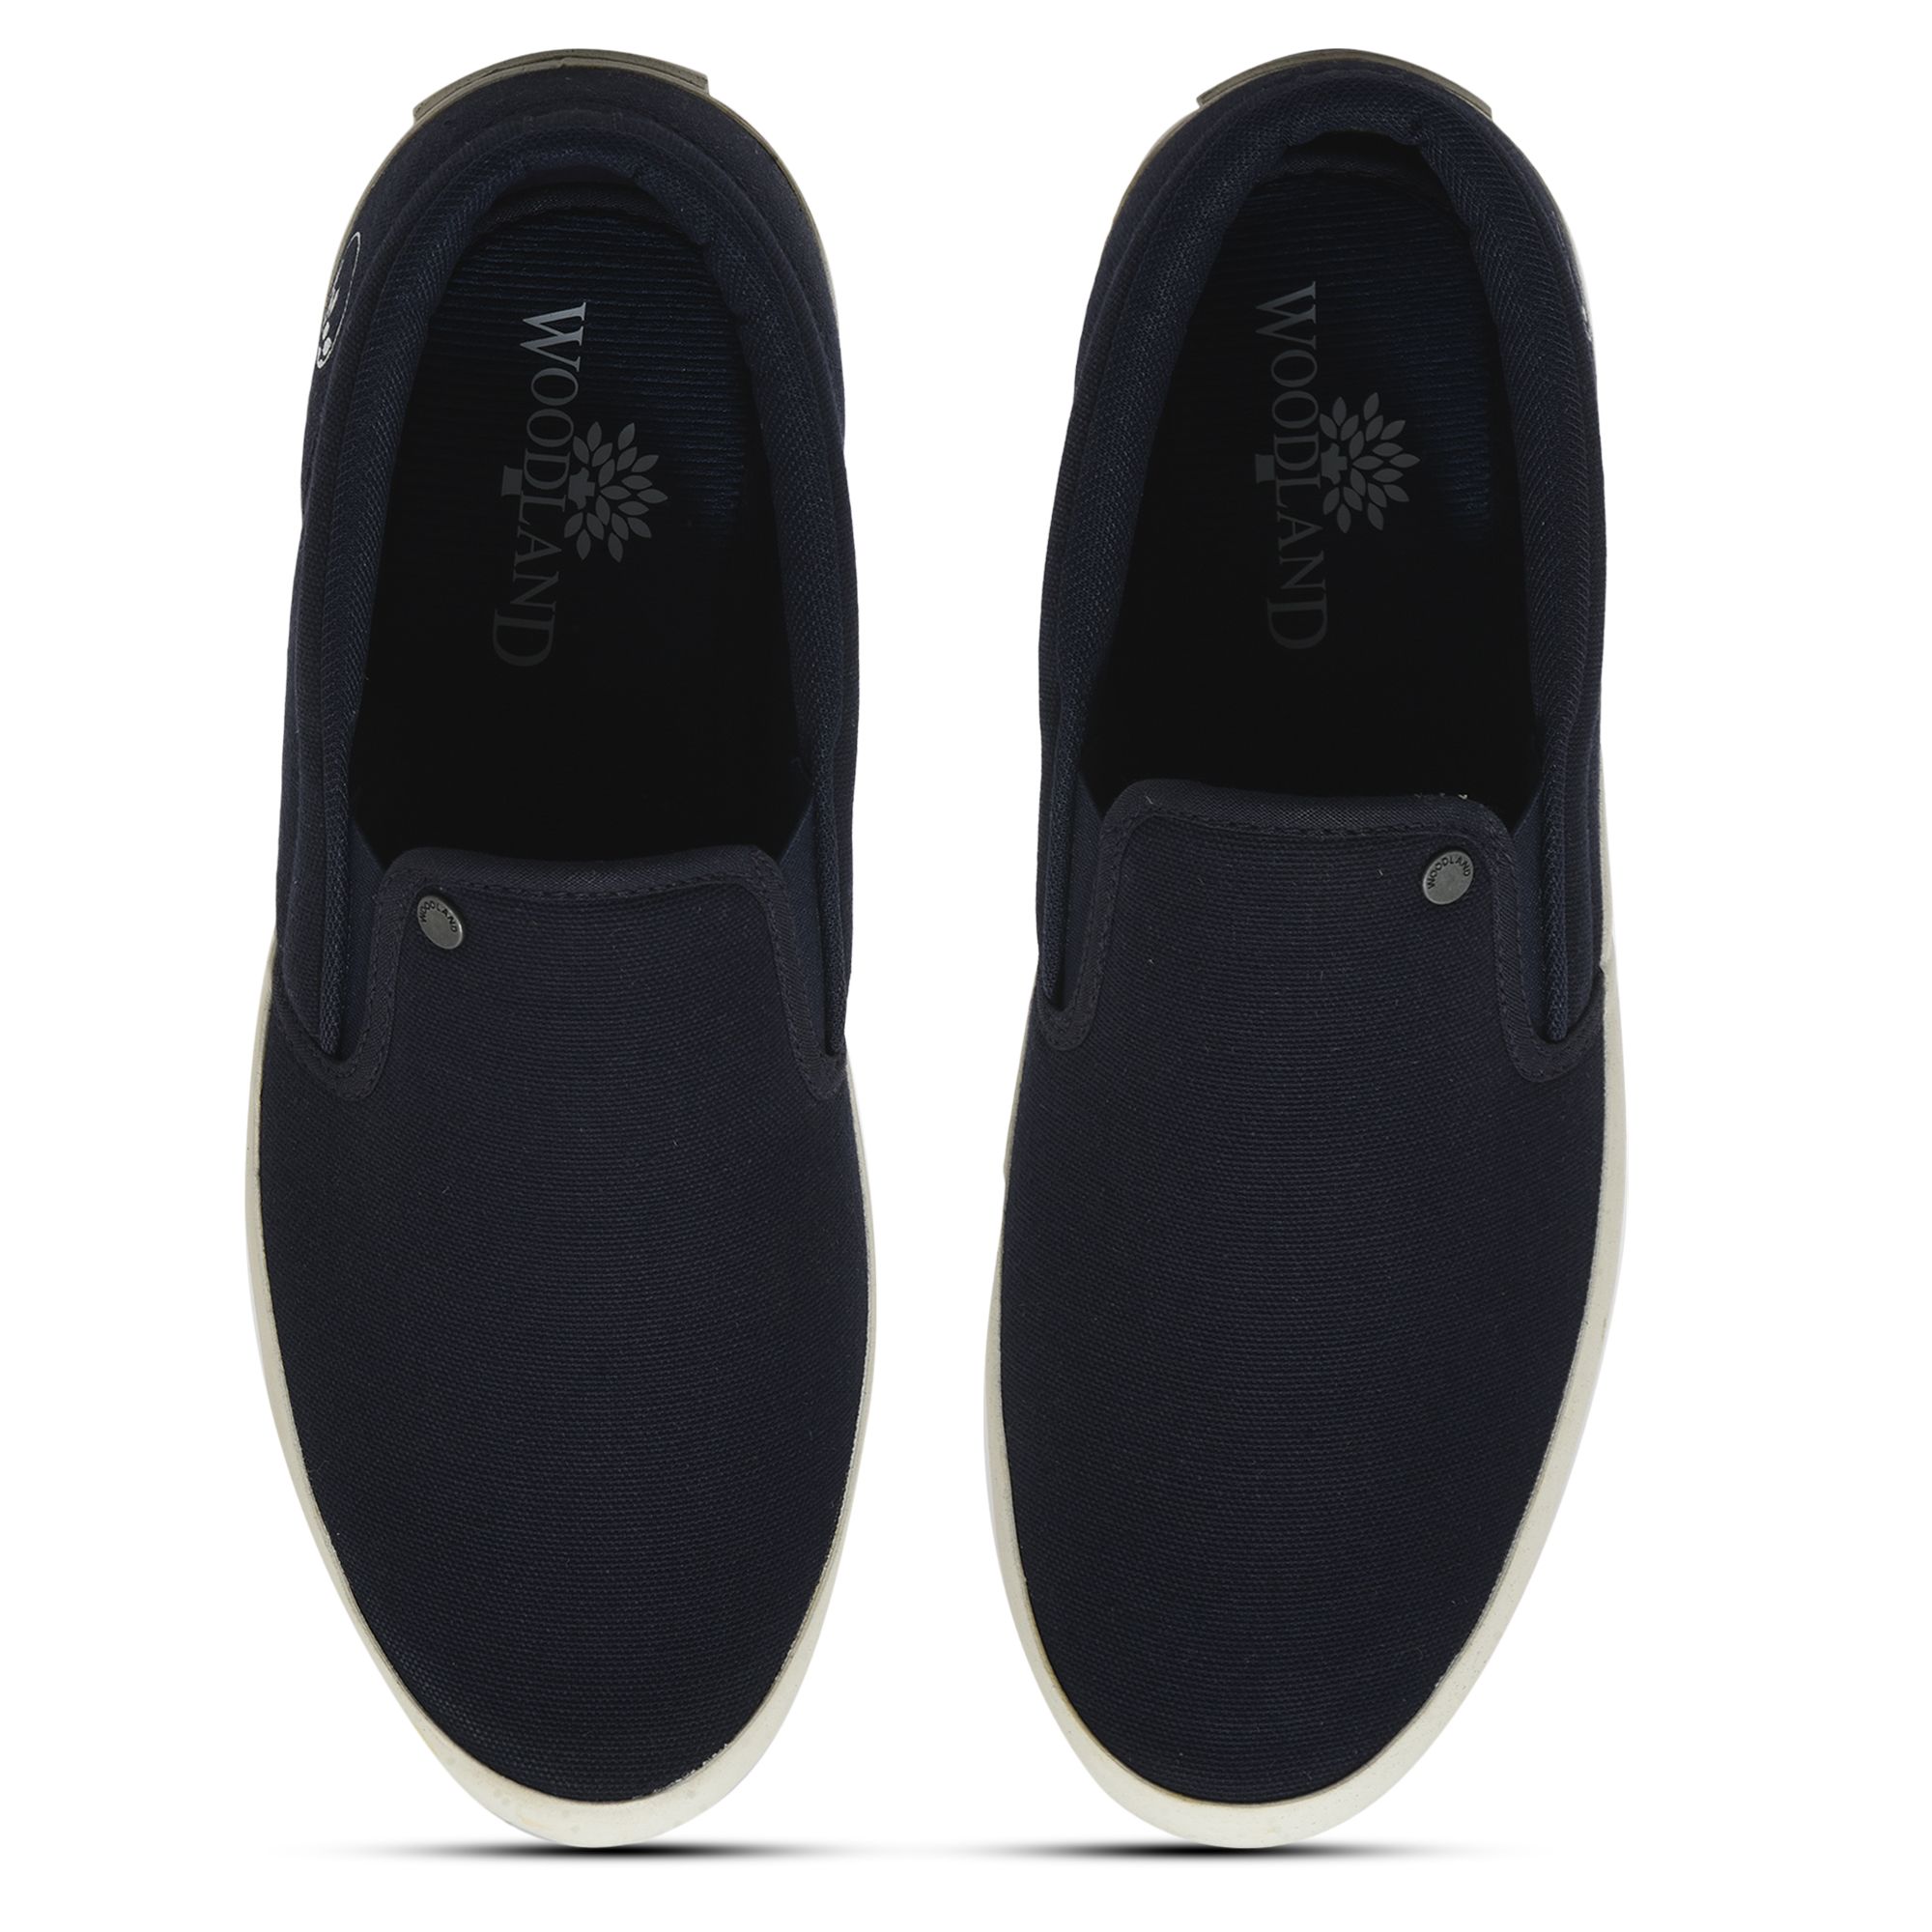 Navy Slip-on shoe for men